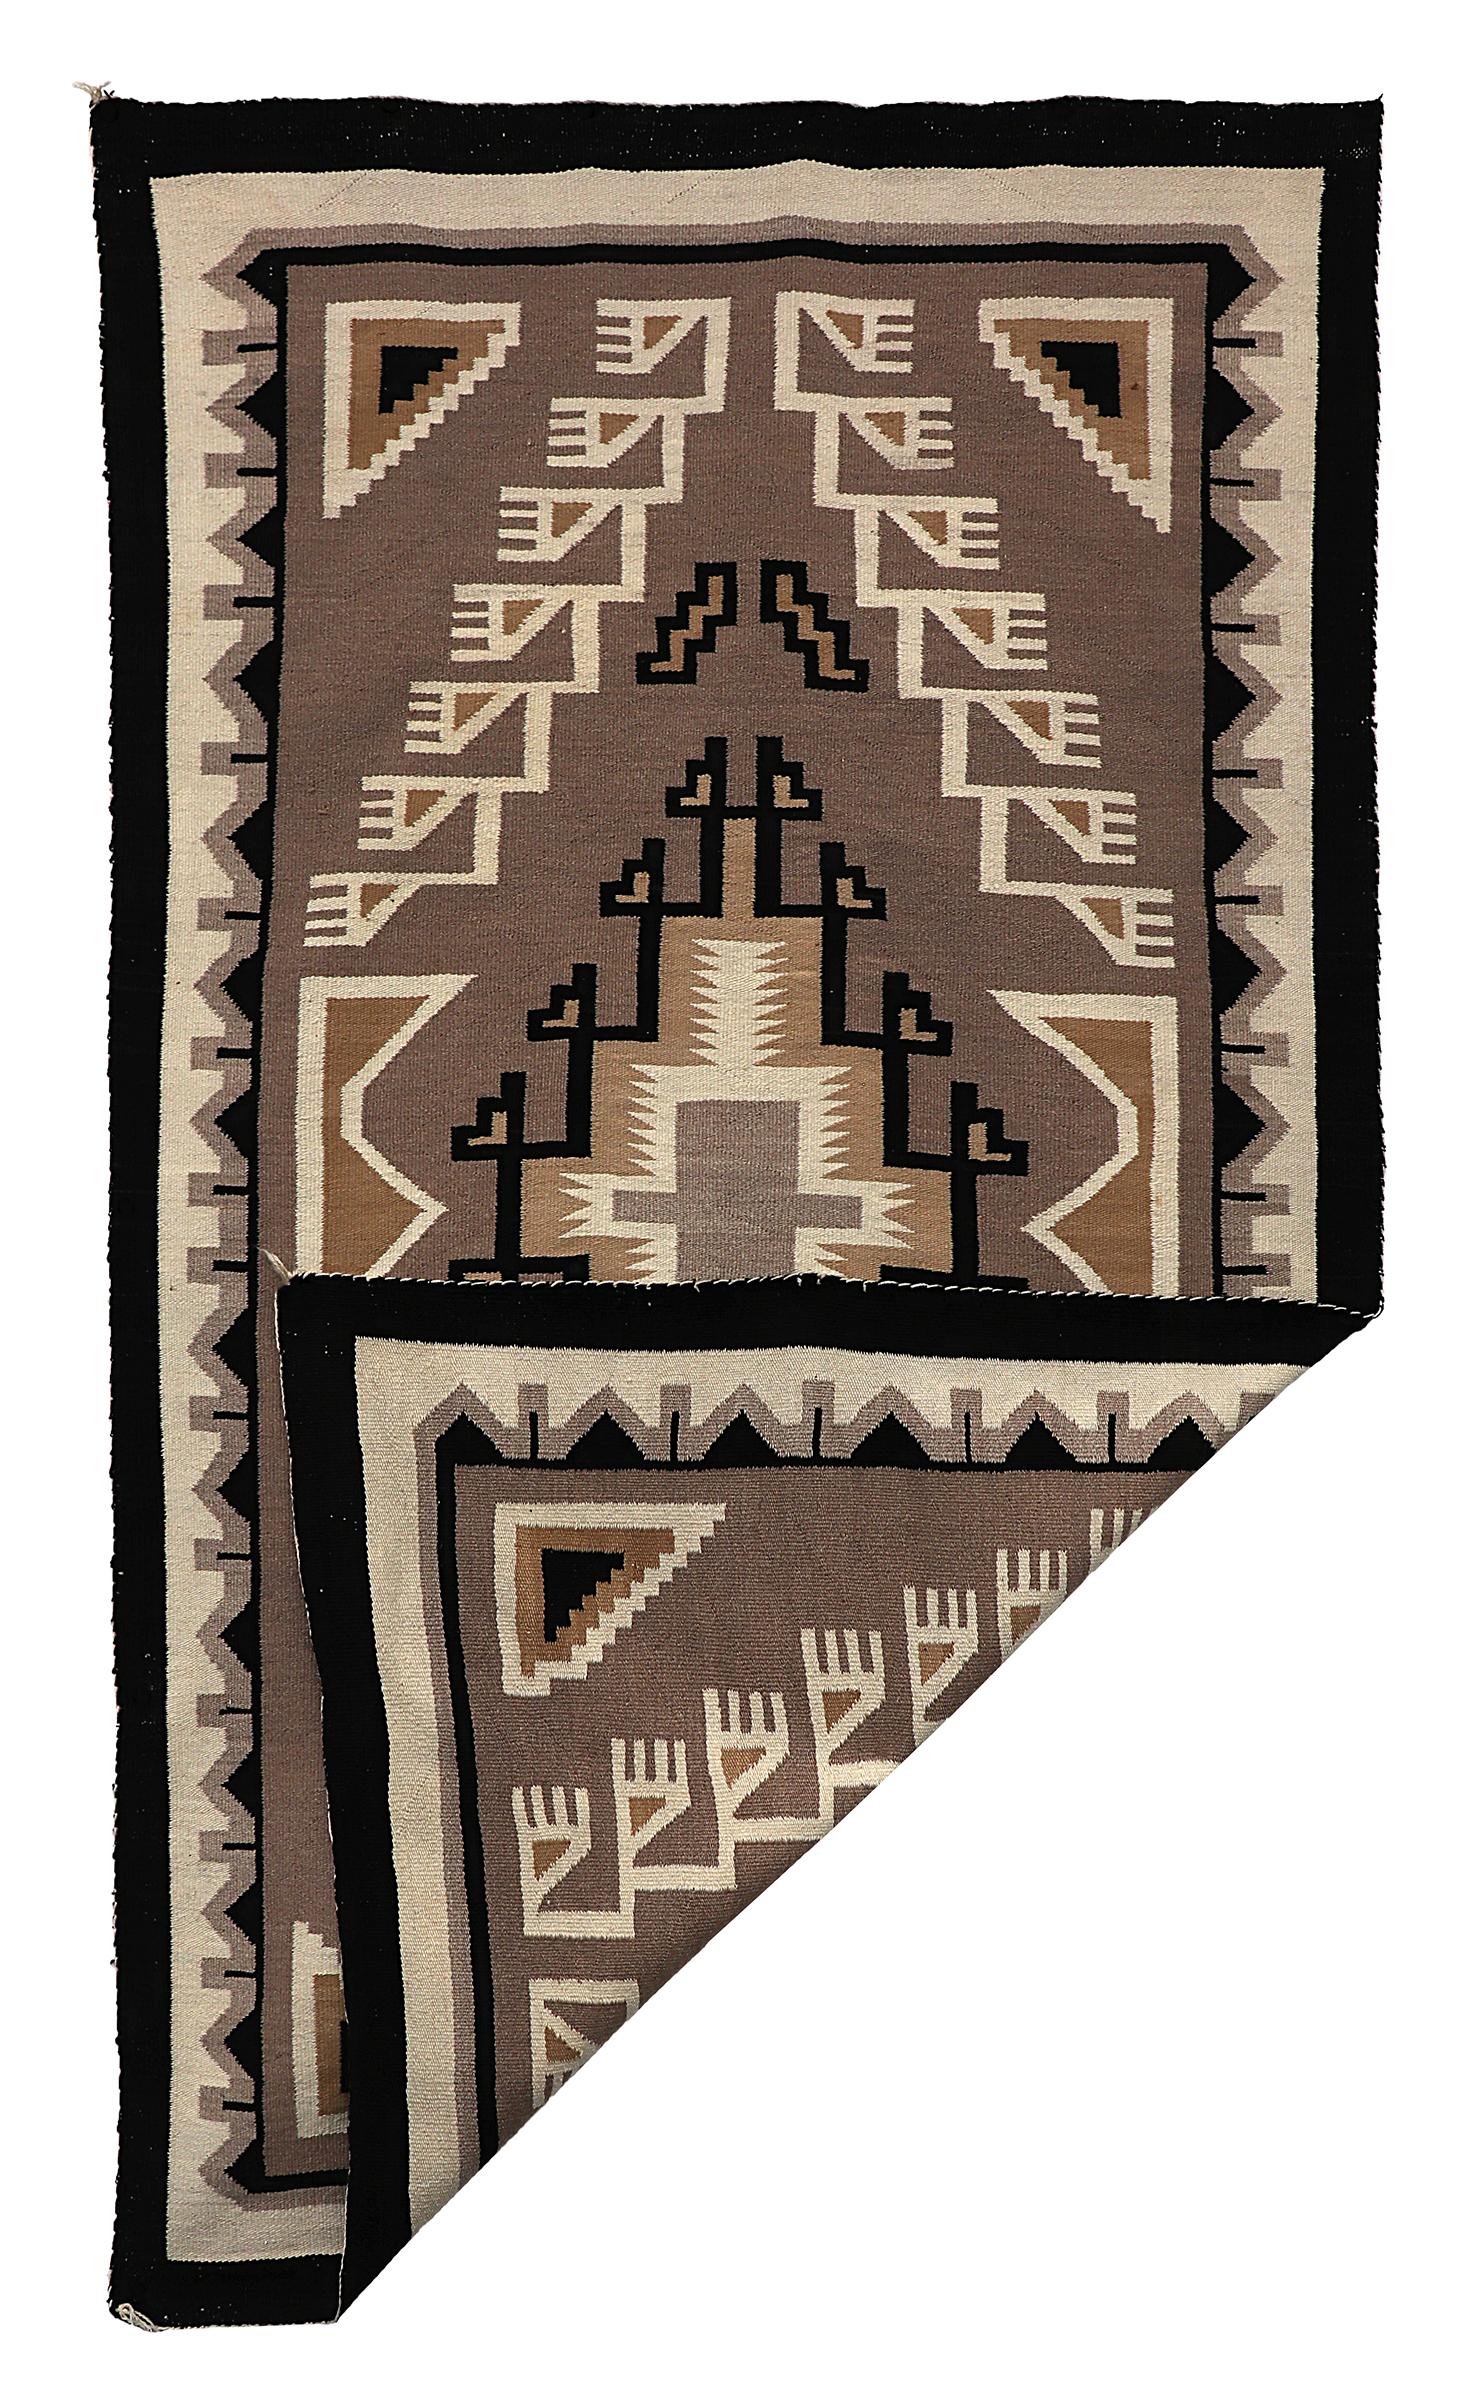 Tapis Navajo, Two Gray Hills, Trading Post Era tissage fait de laine , mesure 81 ¾ x 46 ¾ pouces.
Ce textile convient parfaitement à une utilisation au sol comme tapis de sol ou comme suspension murale.
Les Diné (Navajo) sont une tribu amérindienne